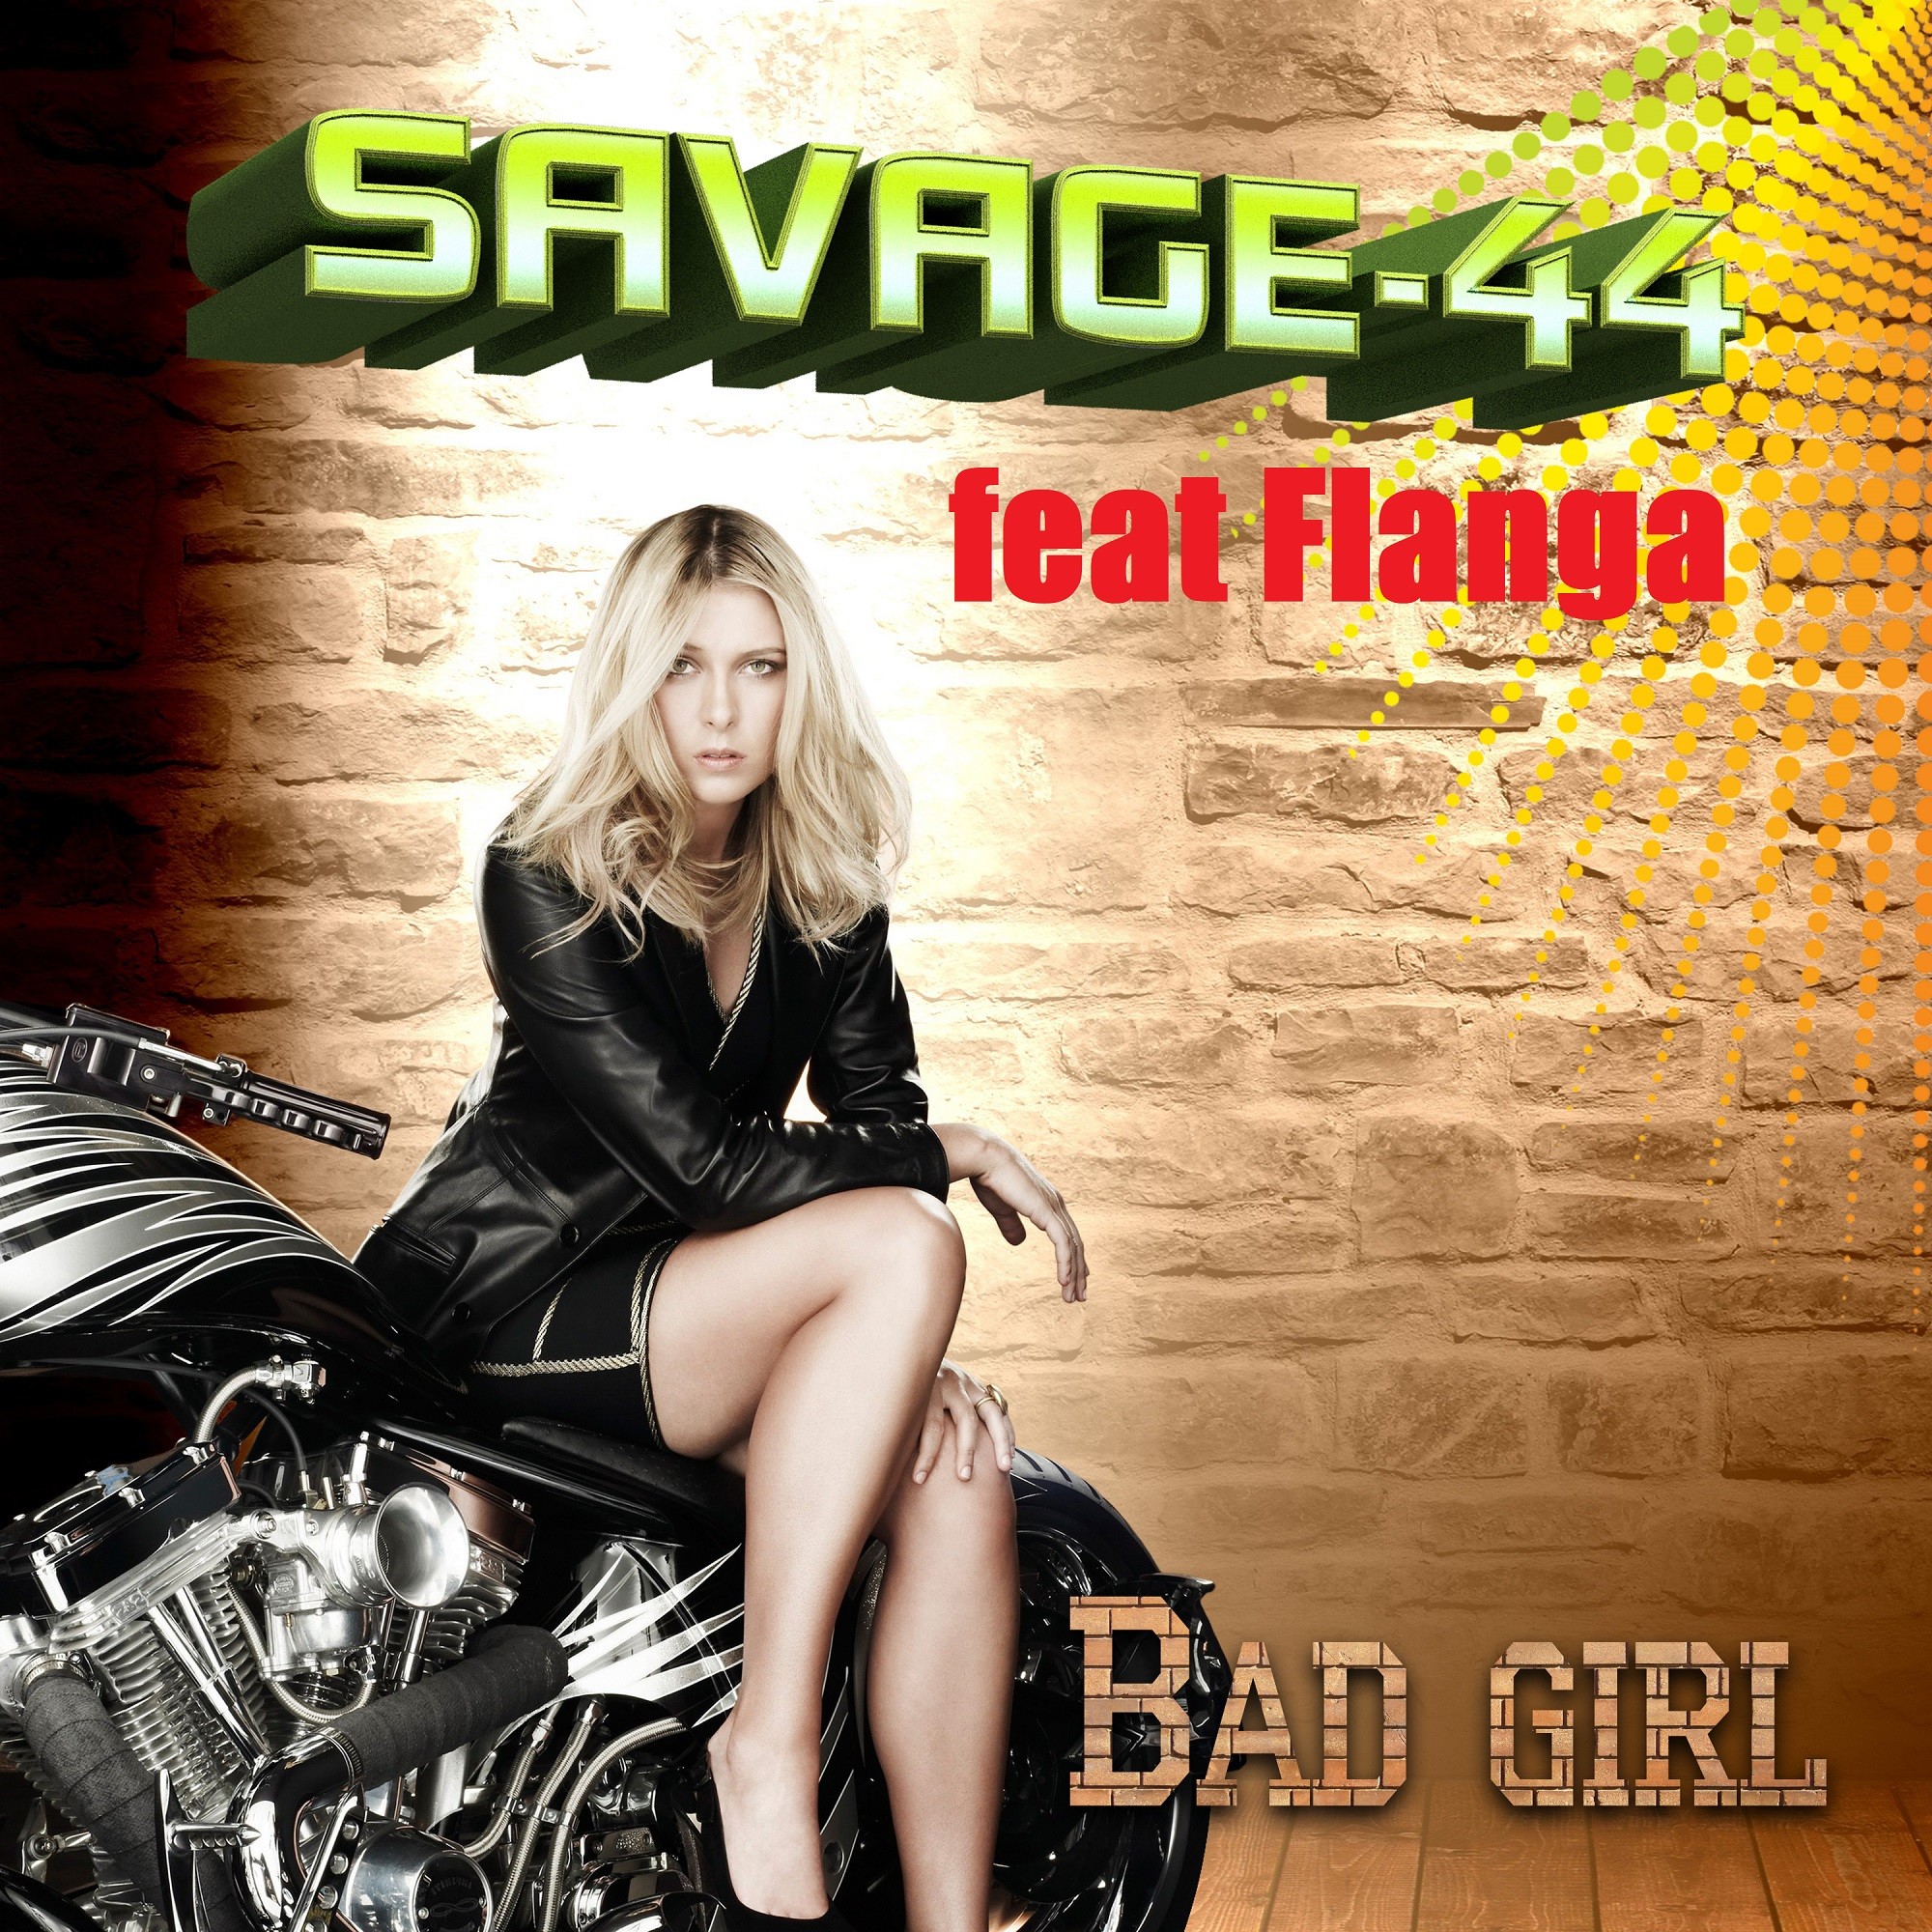 Savage 44. Девушки из Savage. Девушка из группы Savage-44. Savage 44 club drive new